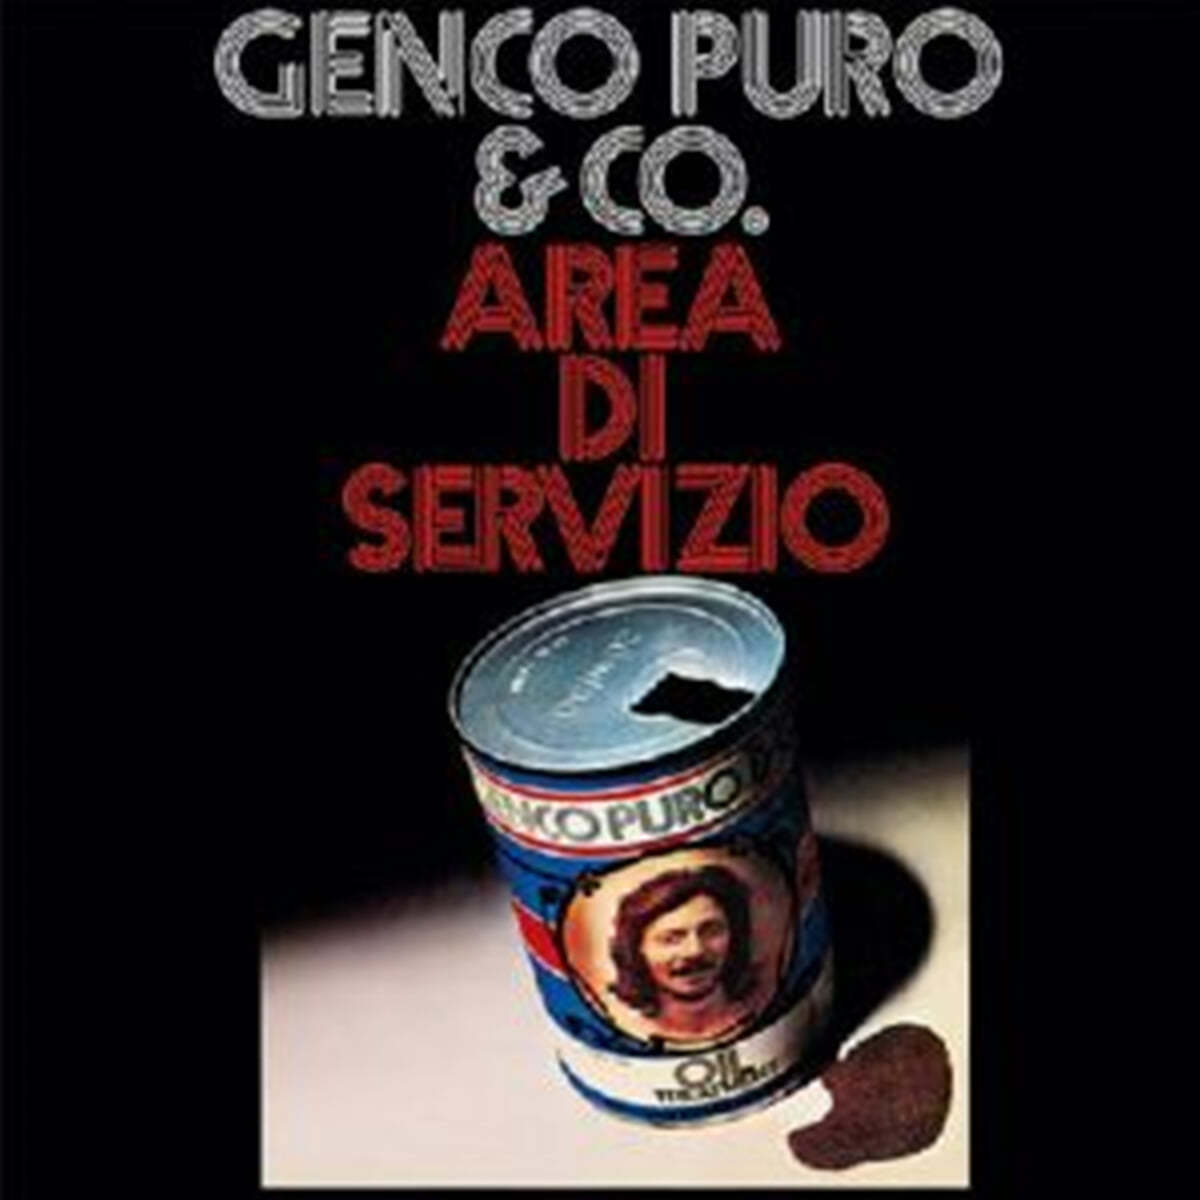 Genco Puro &amp; Co. (젠코 푸로) - Area di servizio [투명 레드 컬러 LP] 